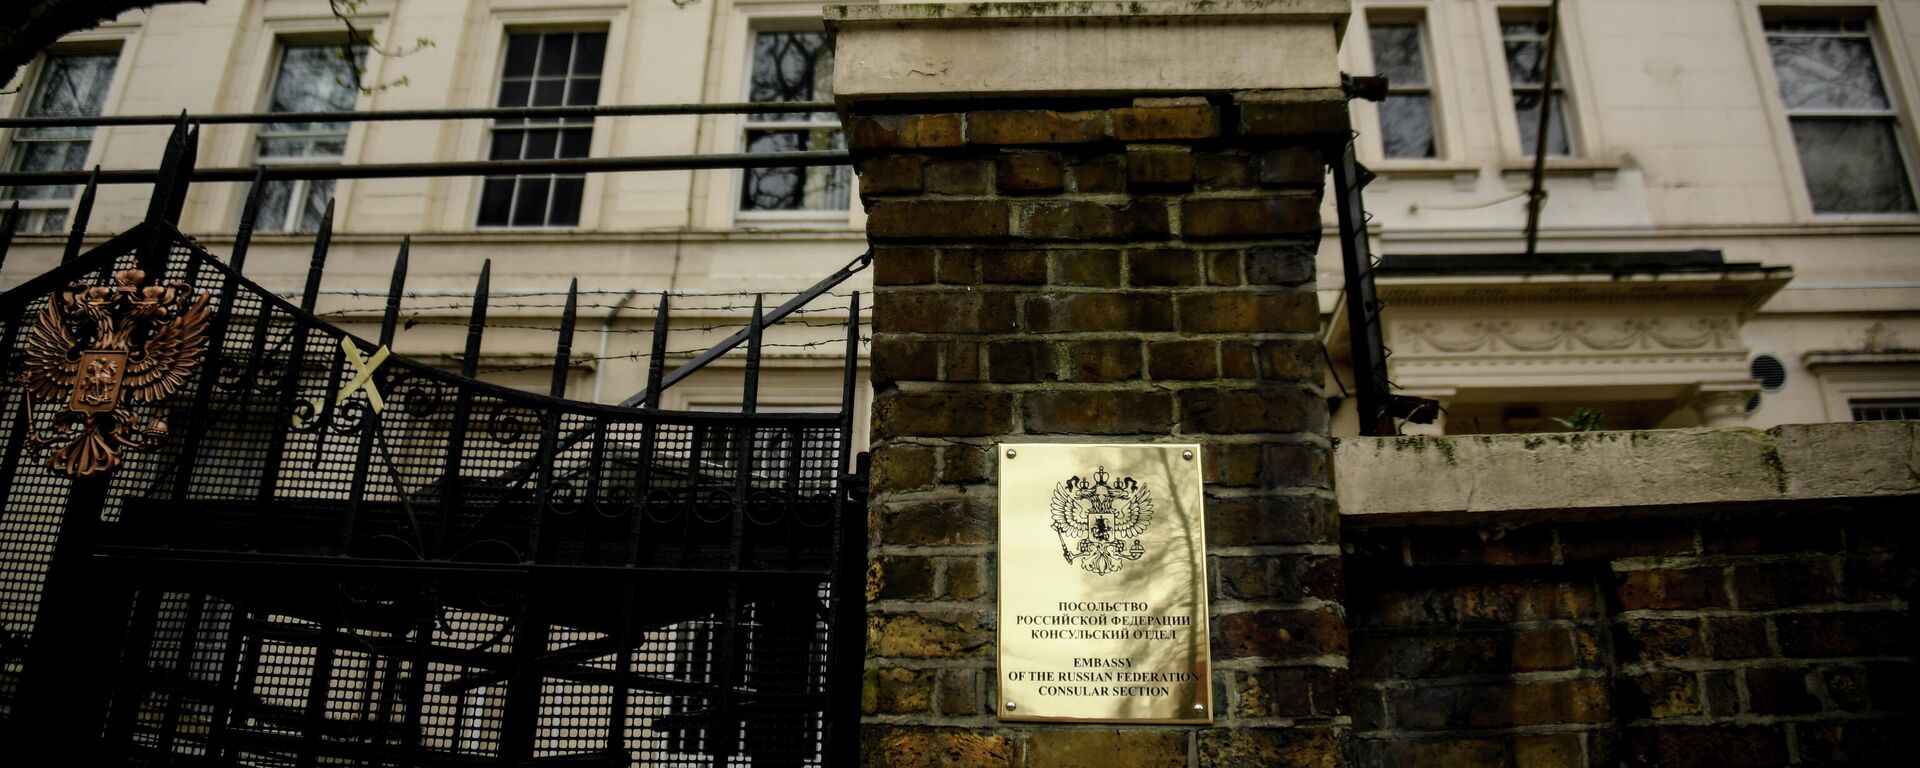 Зграда руске амбасаде у Лондону - Sputnik Србија, 1920, 21.09.2021